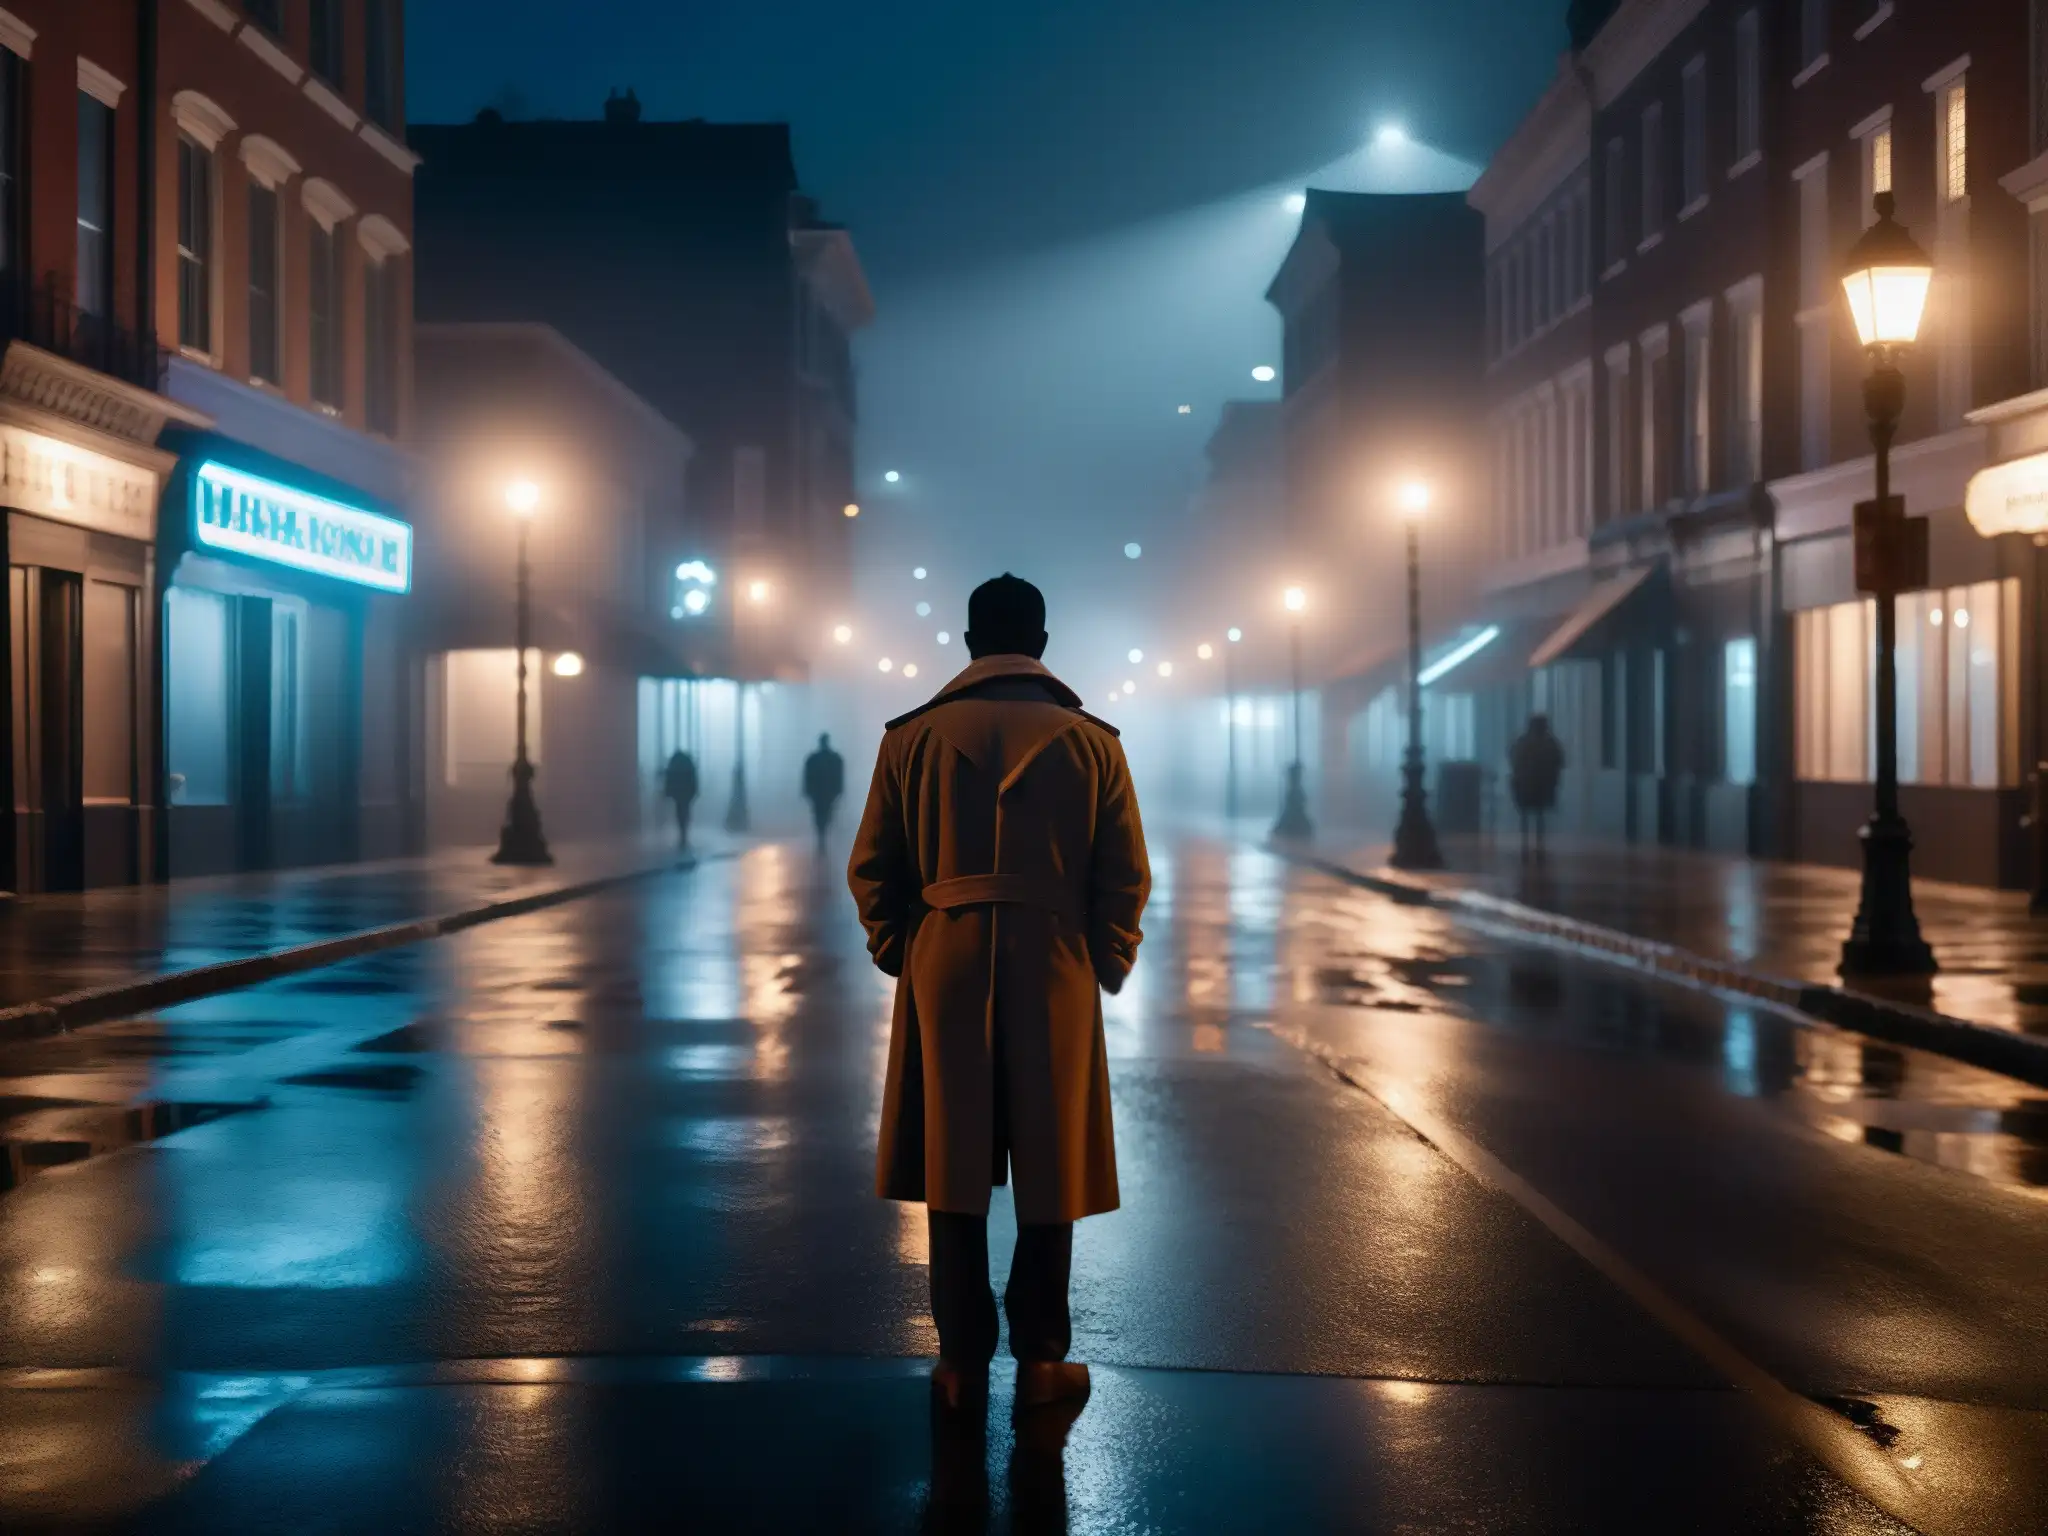 Un callejón oscuro de la ciudad de noche, con una figura sombría y niebla inquietante alrededor de las farolas